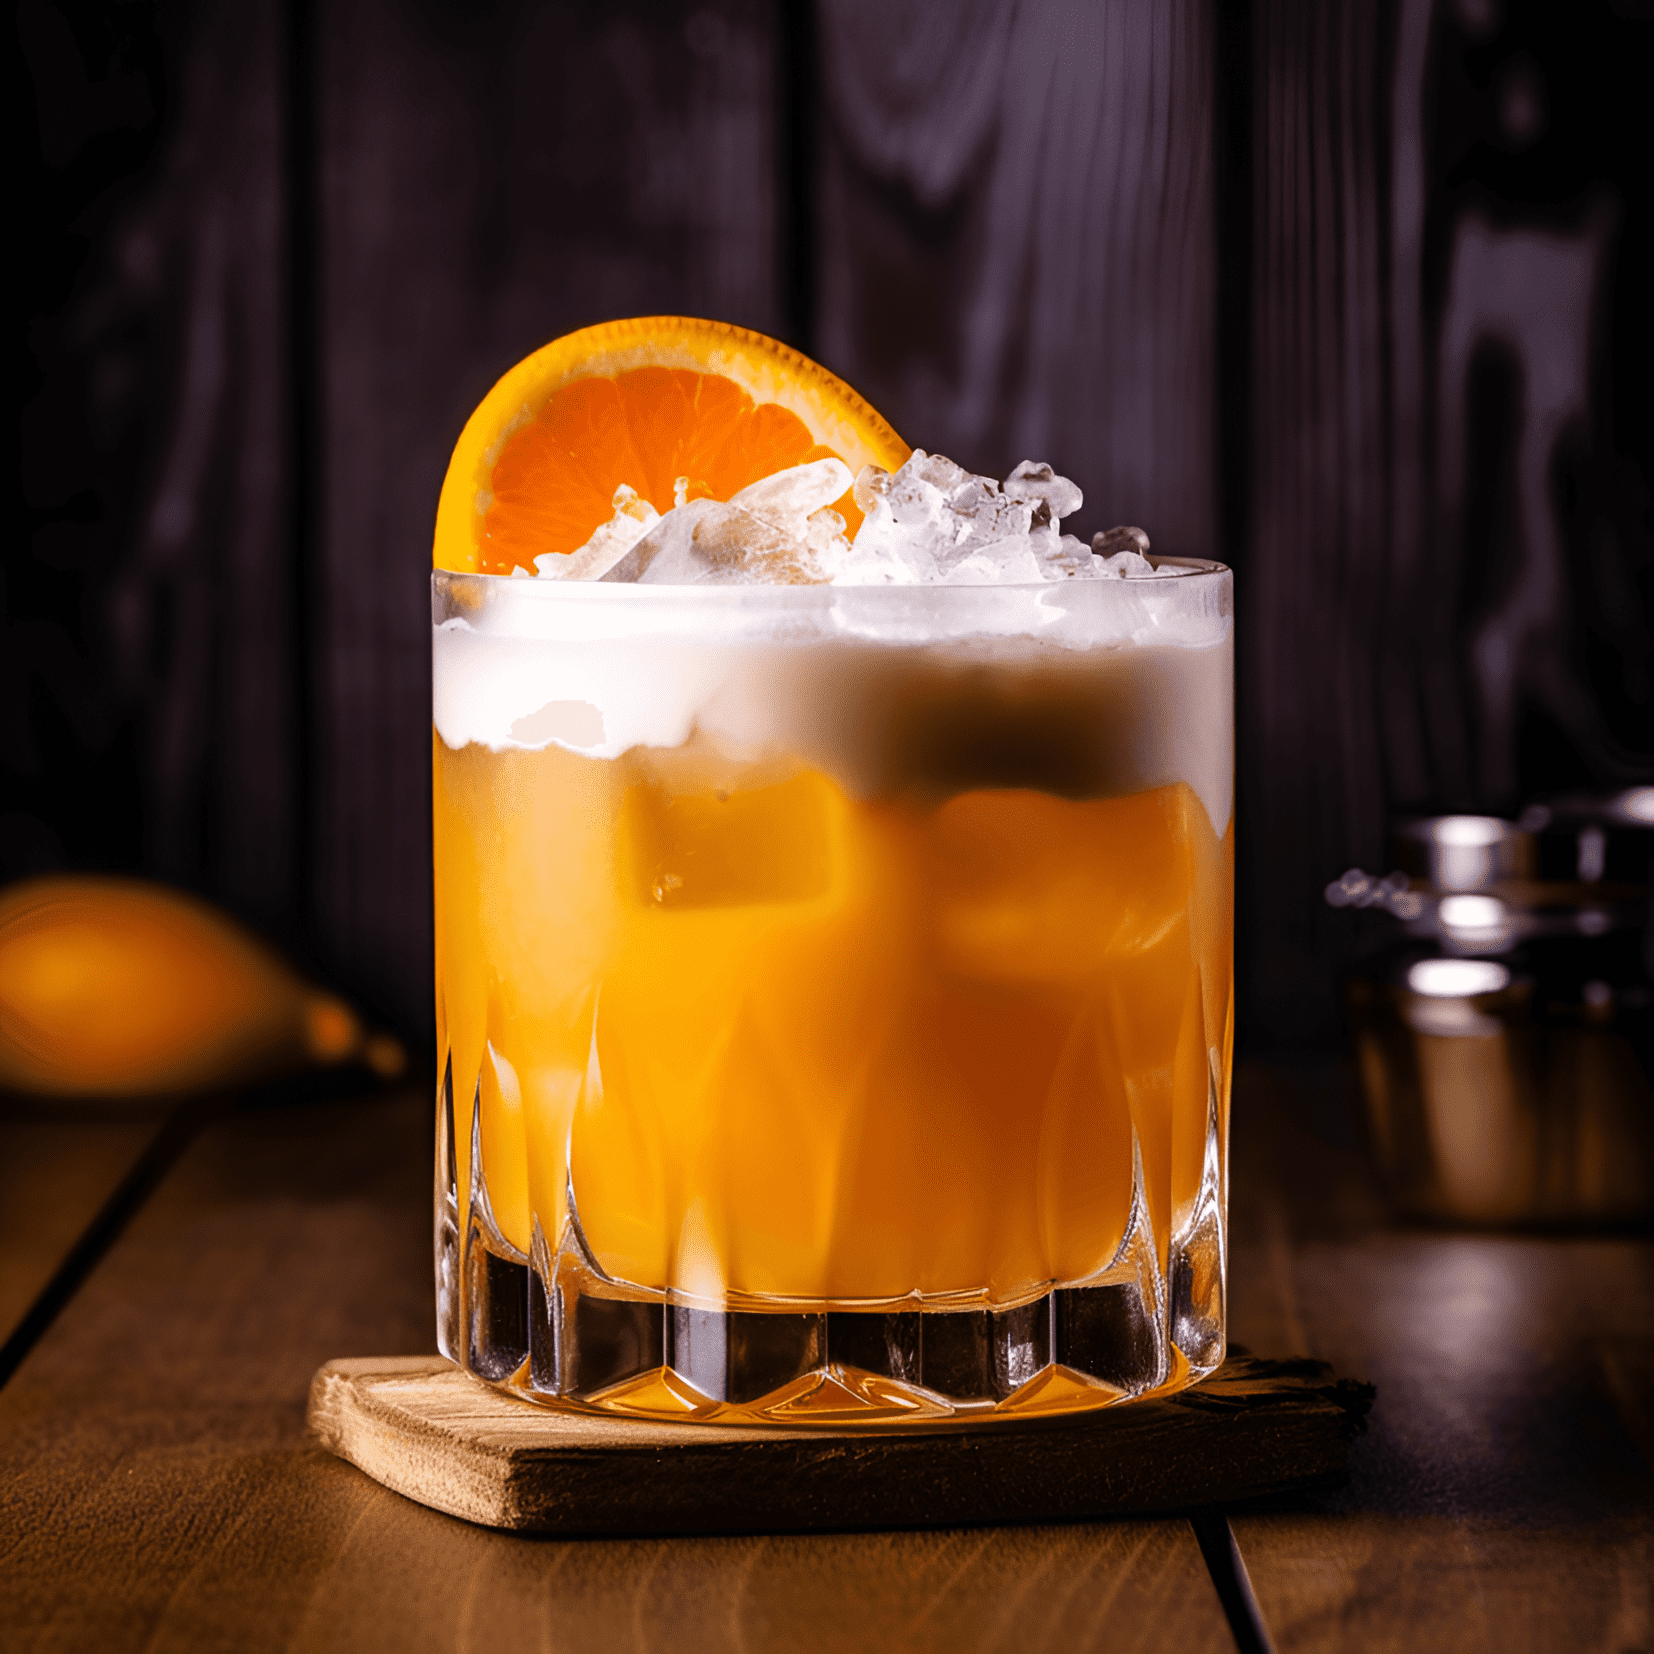 Orange Sour Cóctel Receta - El Orange Sour es un cóctel refrescante, ácido y ligeramente dulce. La combinación de jugo de naranja fresco y jugo de limón crea un sabor cítrico vibrante, mientras que el jarabe simple agrega un toque de dulzura para equilibrar la acidez. El whisky proporciona un sabor suave y cálido que complementa los sabores frutales.